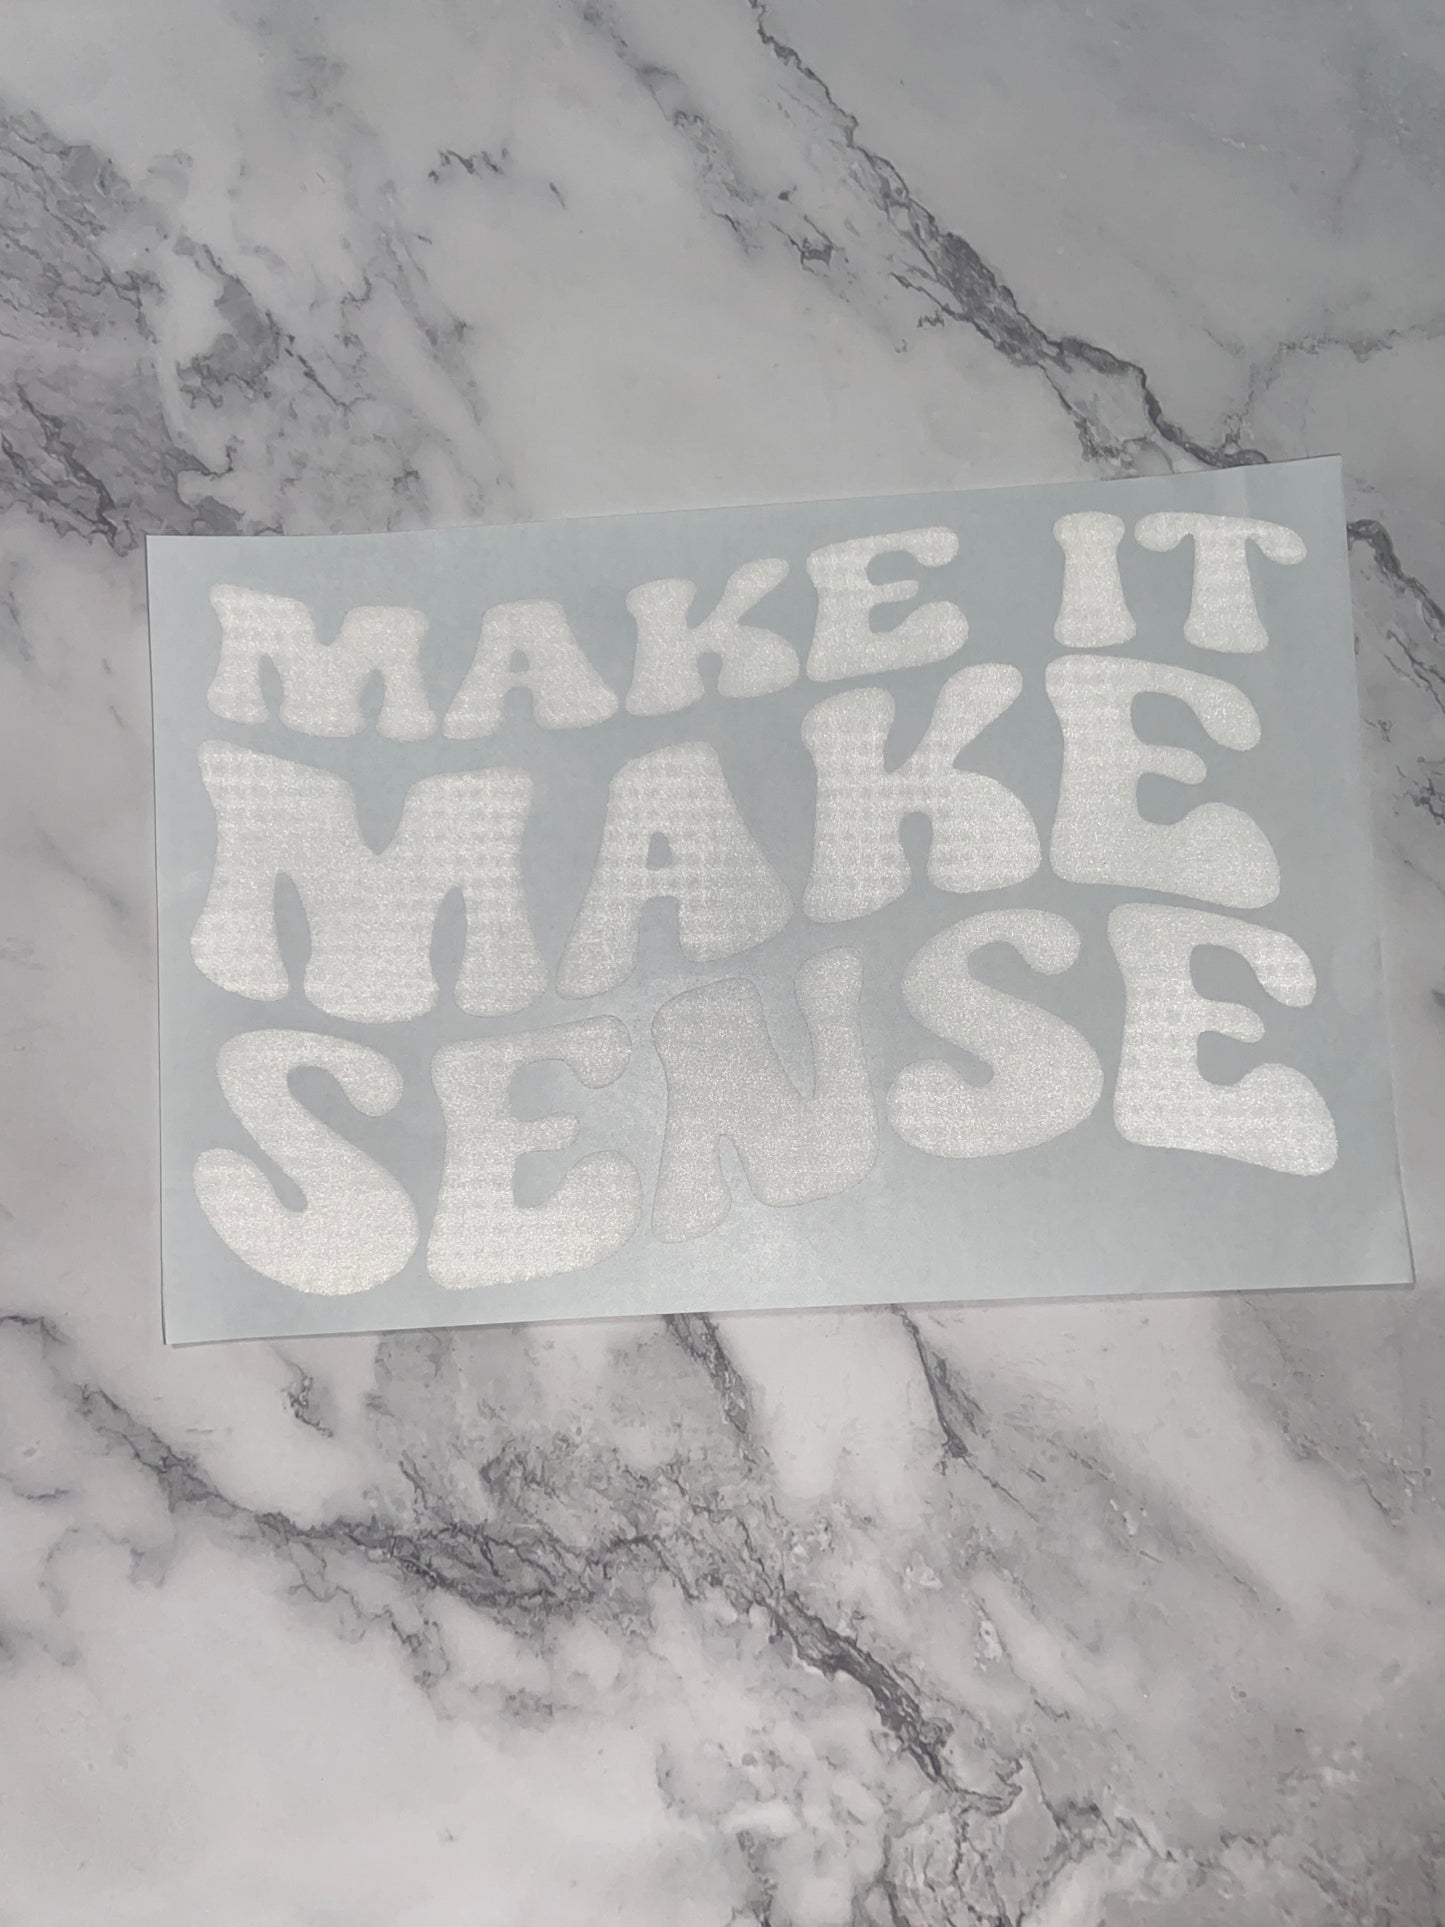 Make it make sense print